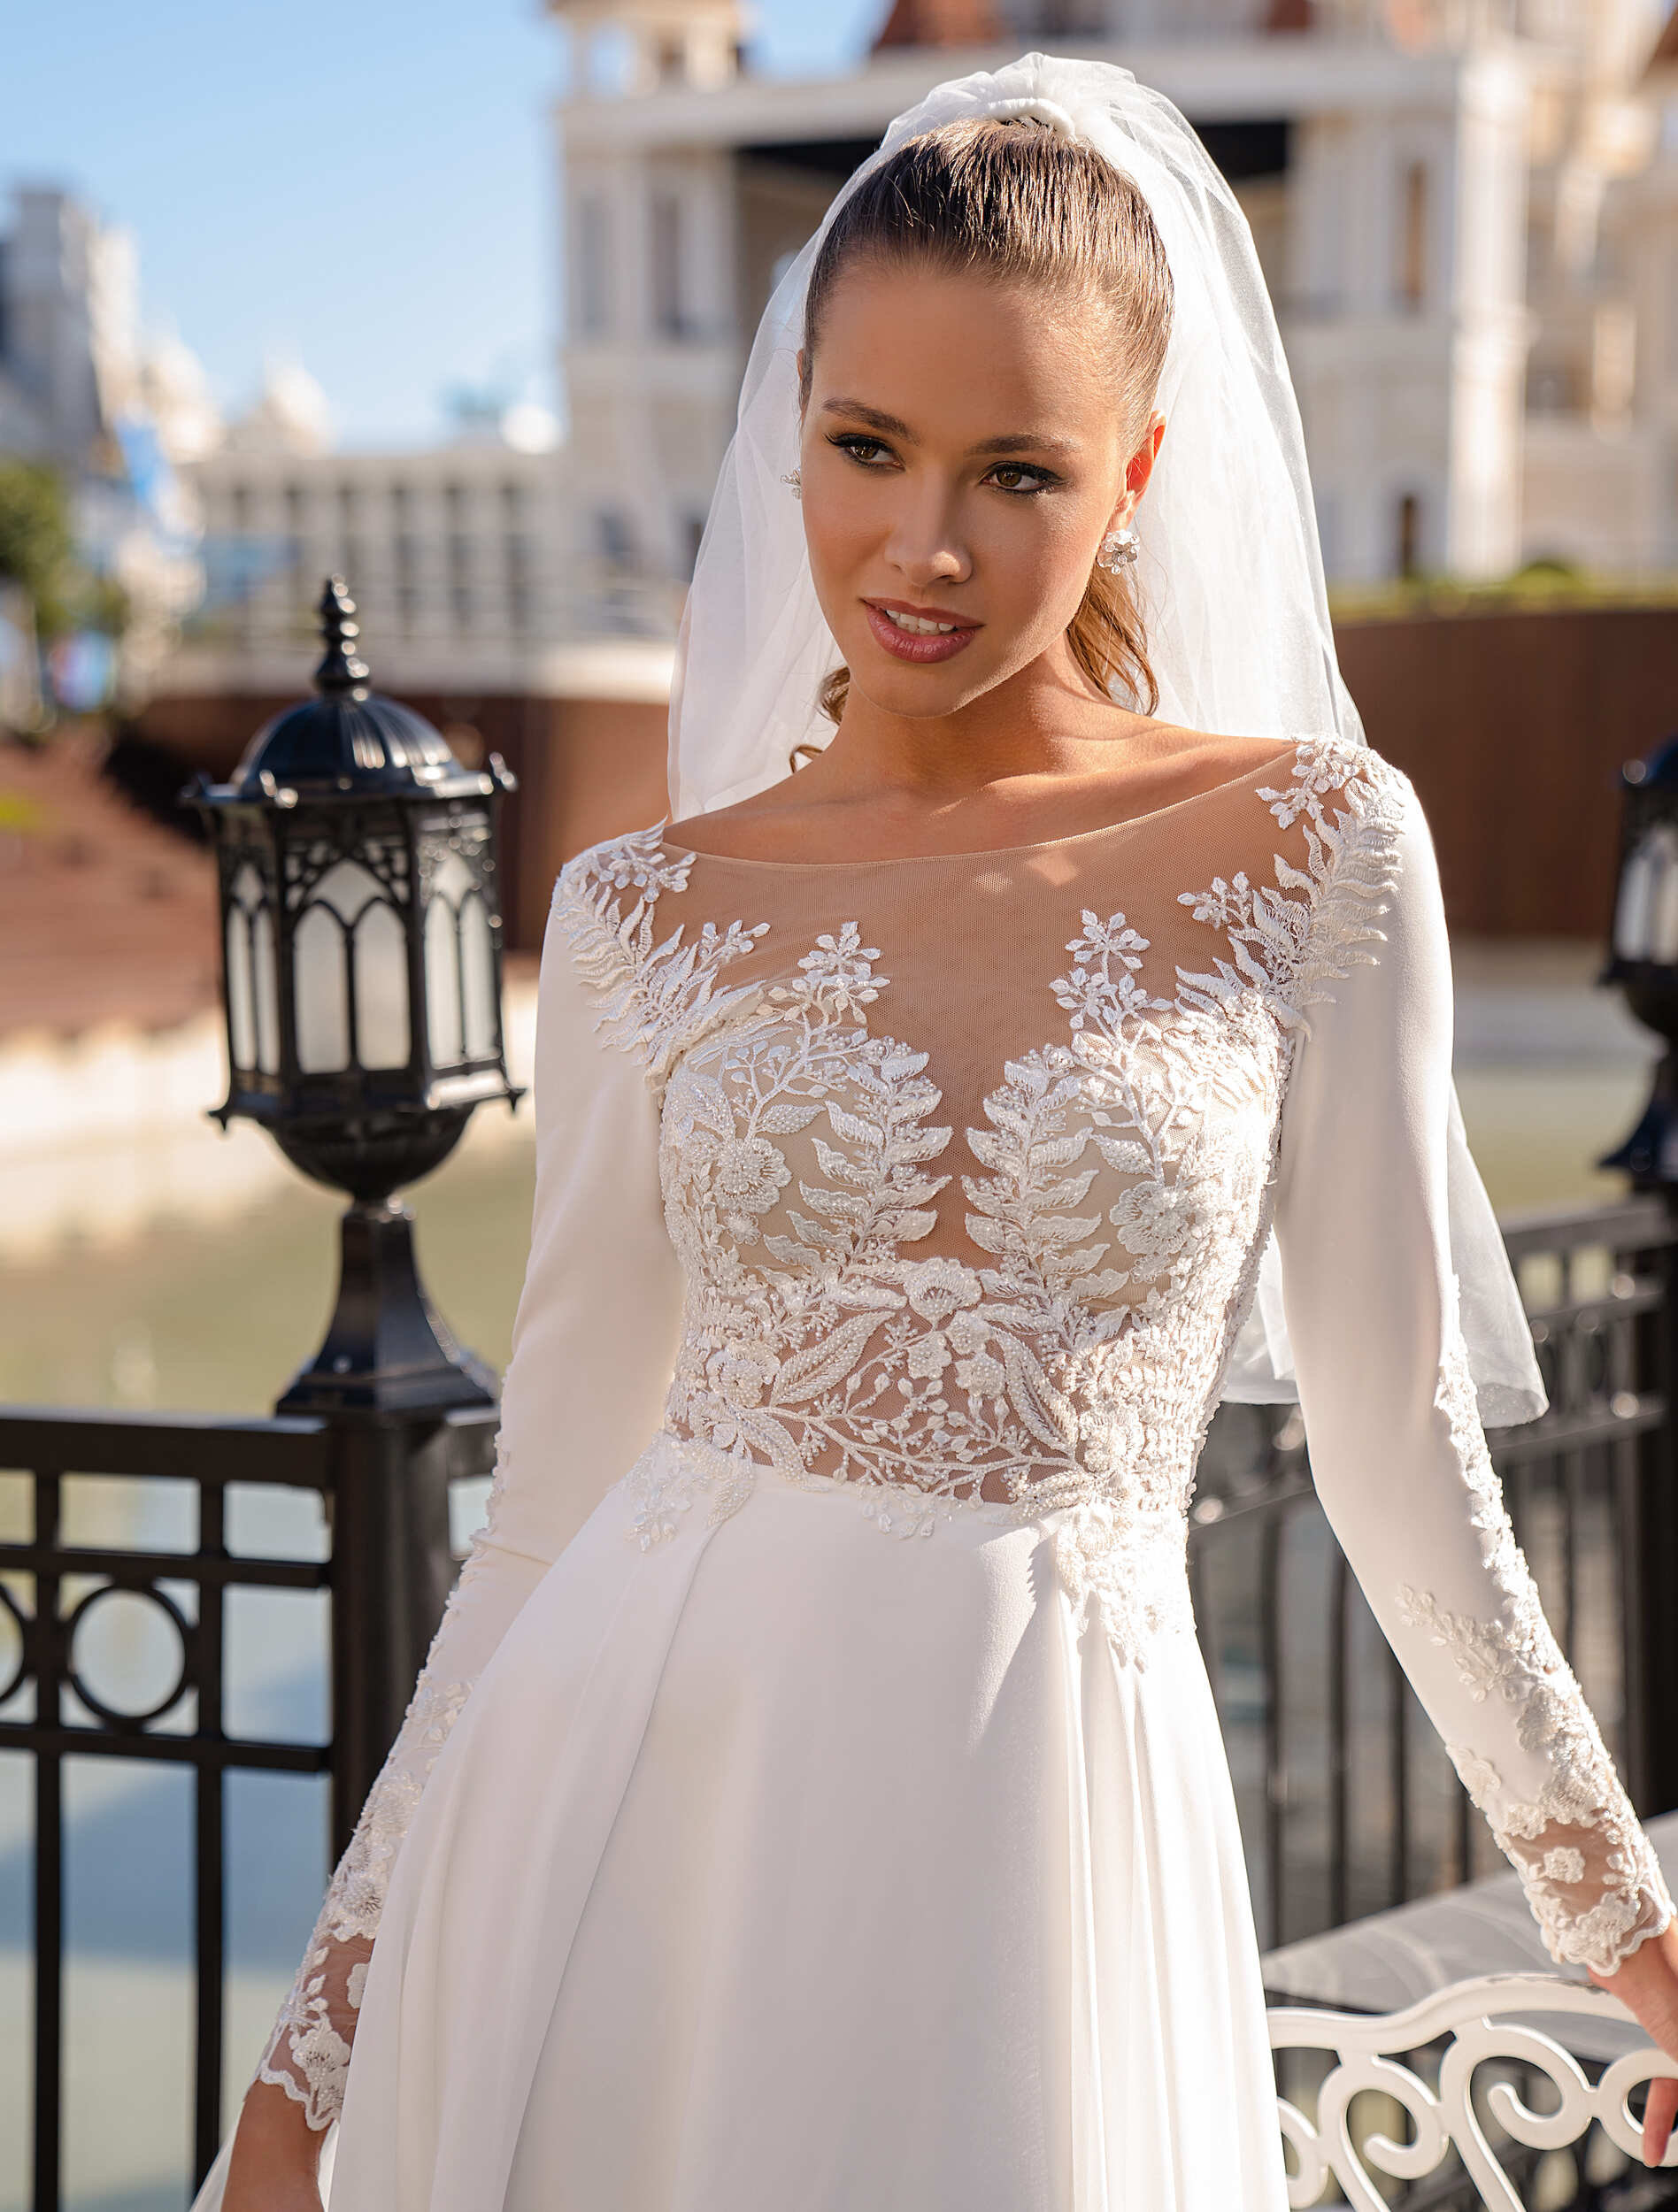 A-line Wedding Dress Elegant Wedding Dress Minimalistic | Etsy